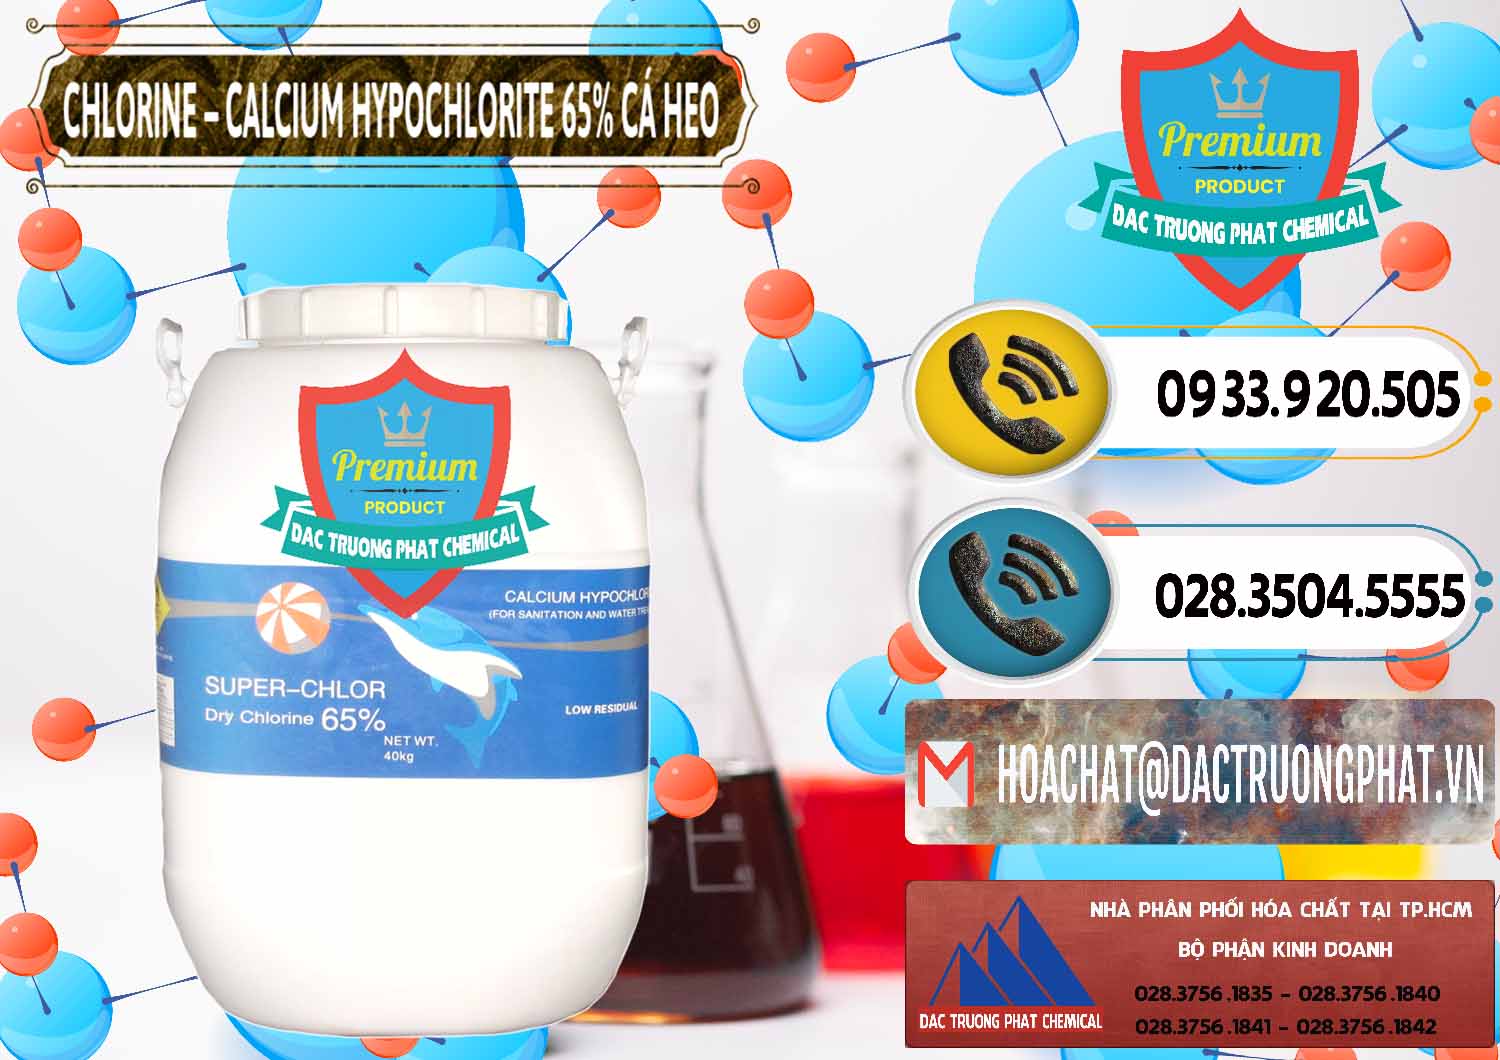 Nơi chuyên bán & cung cấp Clorin - Chlorine Cá Heo 65% Trung Quốc China - 0053 - Phân phối - kinh doanh hóa chất tại TP.HCM - hoachatdetnhuom.vn